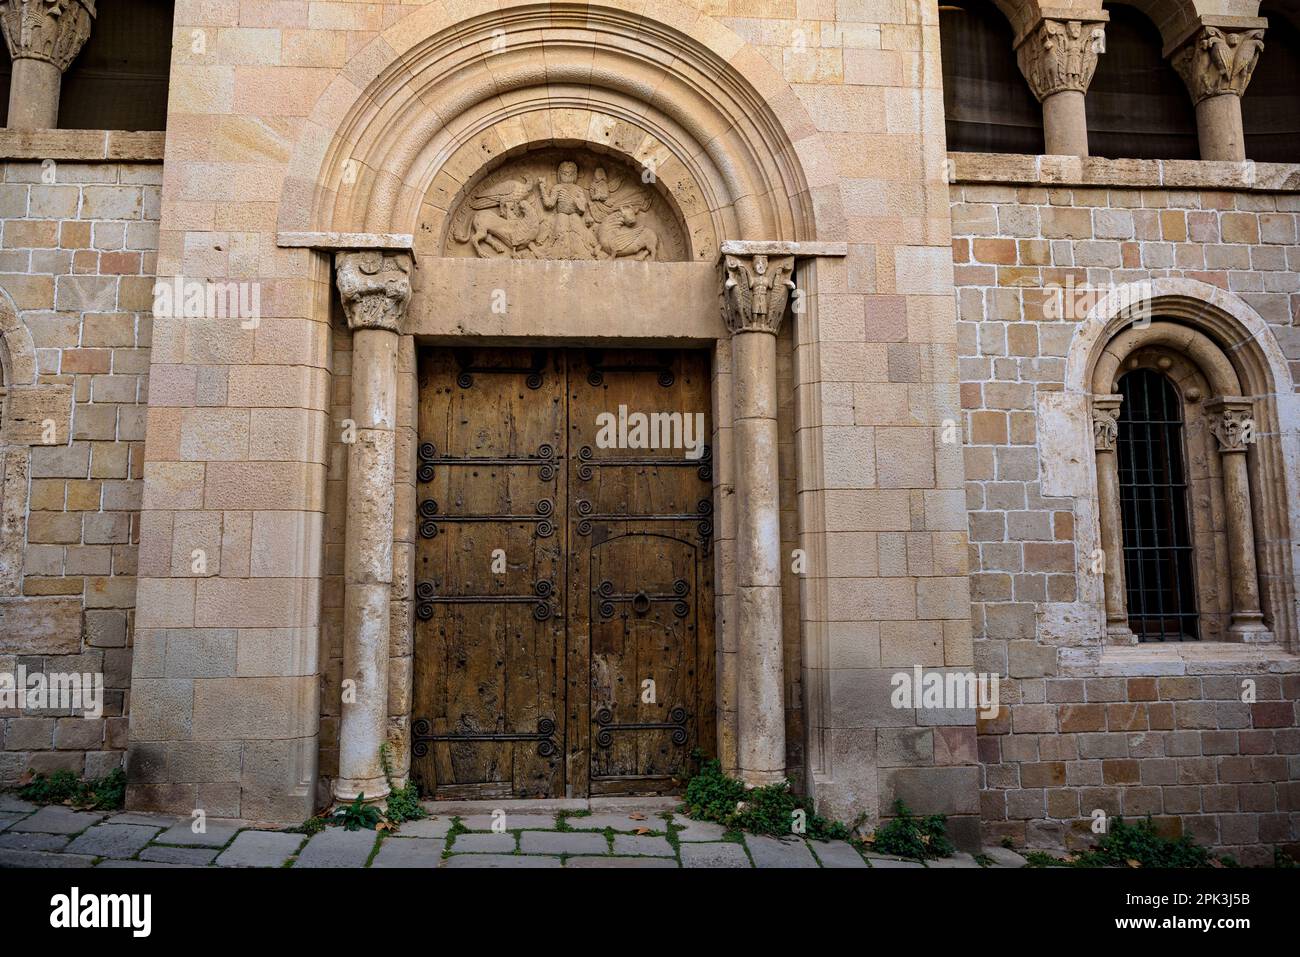 Detalle de la puerta del convento del Monasterio de Pedralbes (Barcelona, Cataluña, España) Esp: Detalle de la puerta del convento Foto de stock